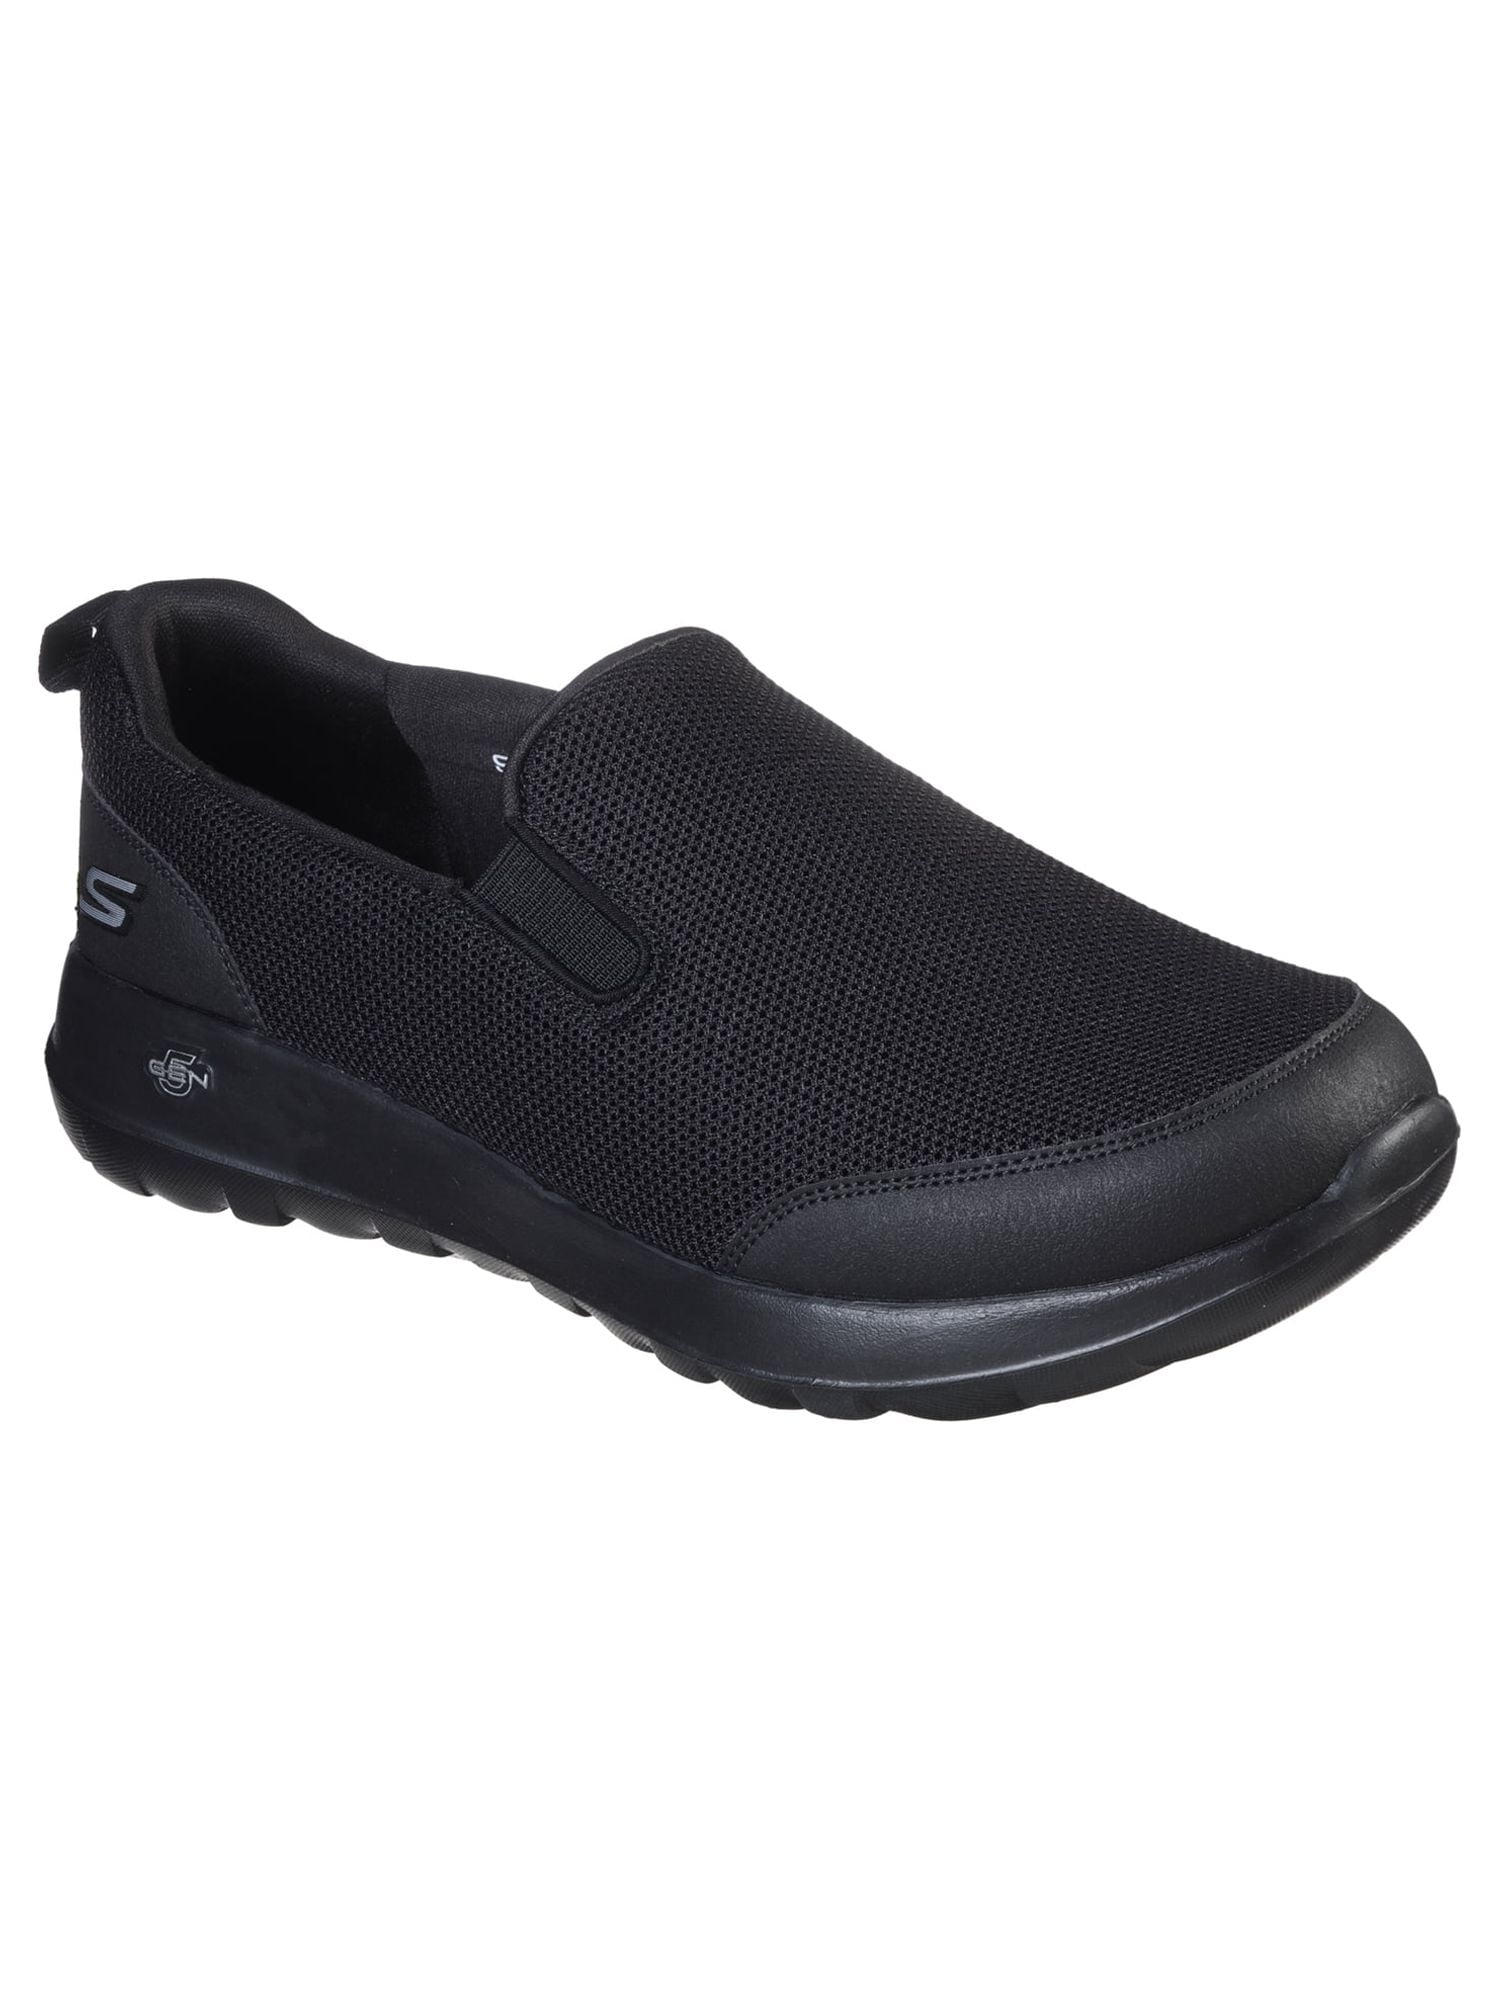 Skechers Men's Go Walk Max Clinched Slip-on Comfort Sneaker (Wide Width ...